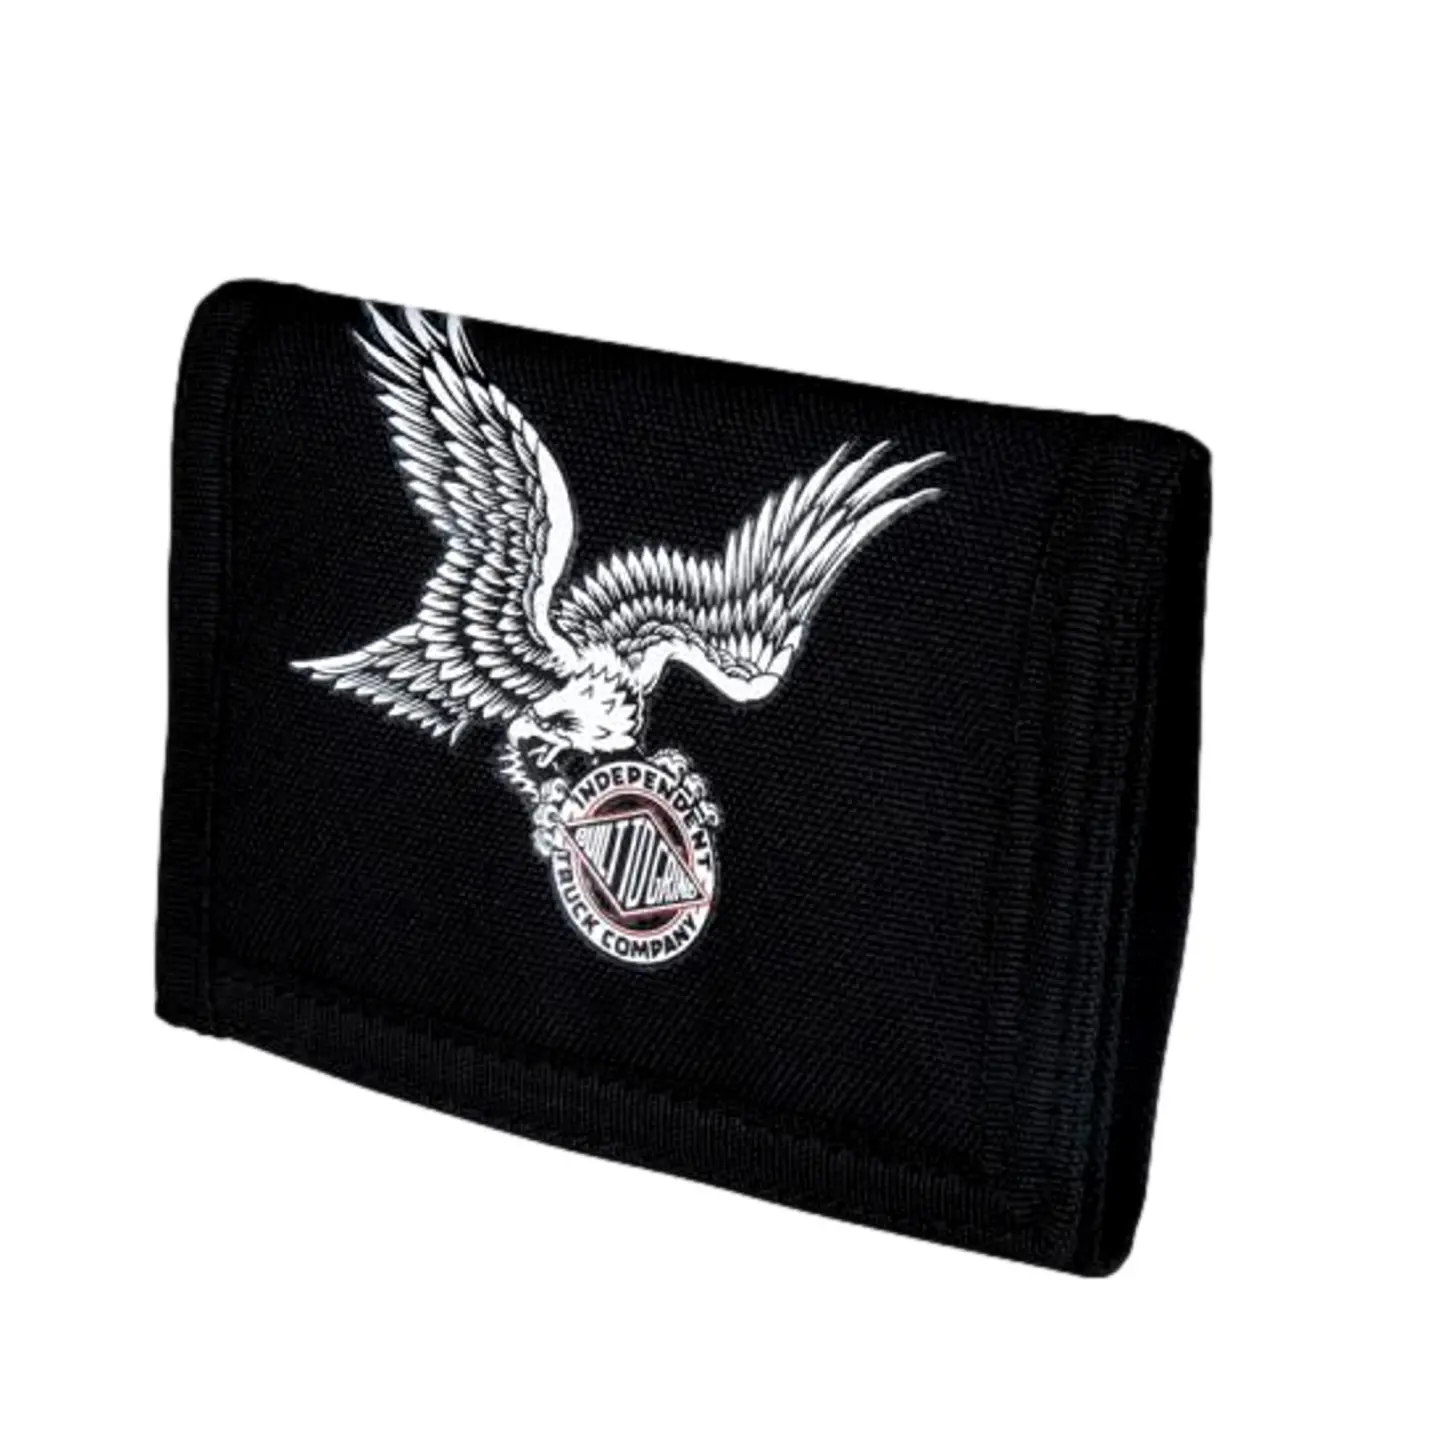 Independent Portafoglio Btg Eagle Wallet Black